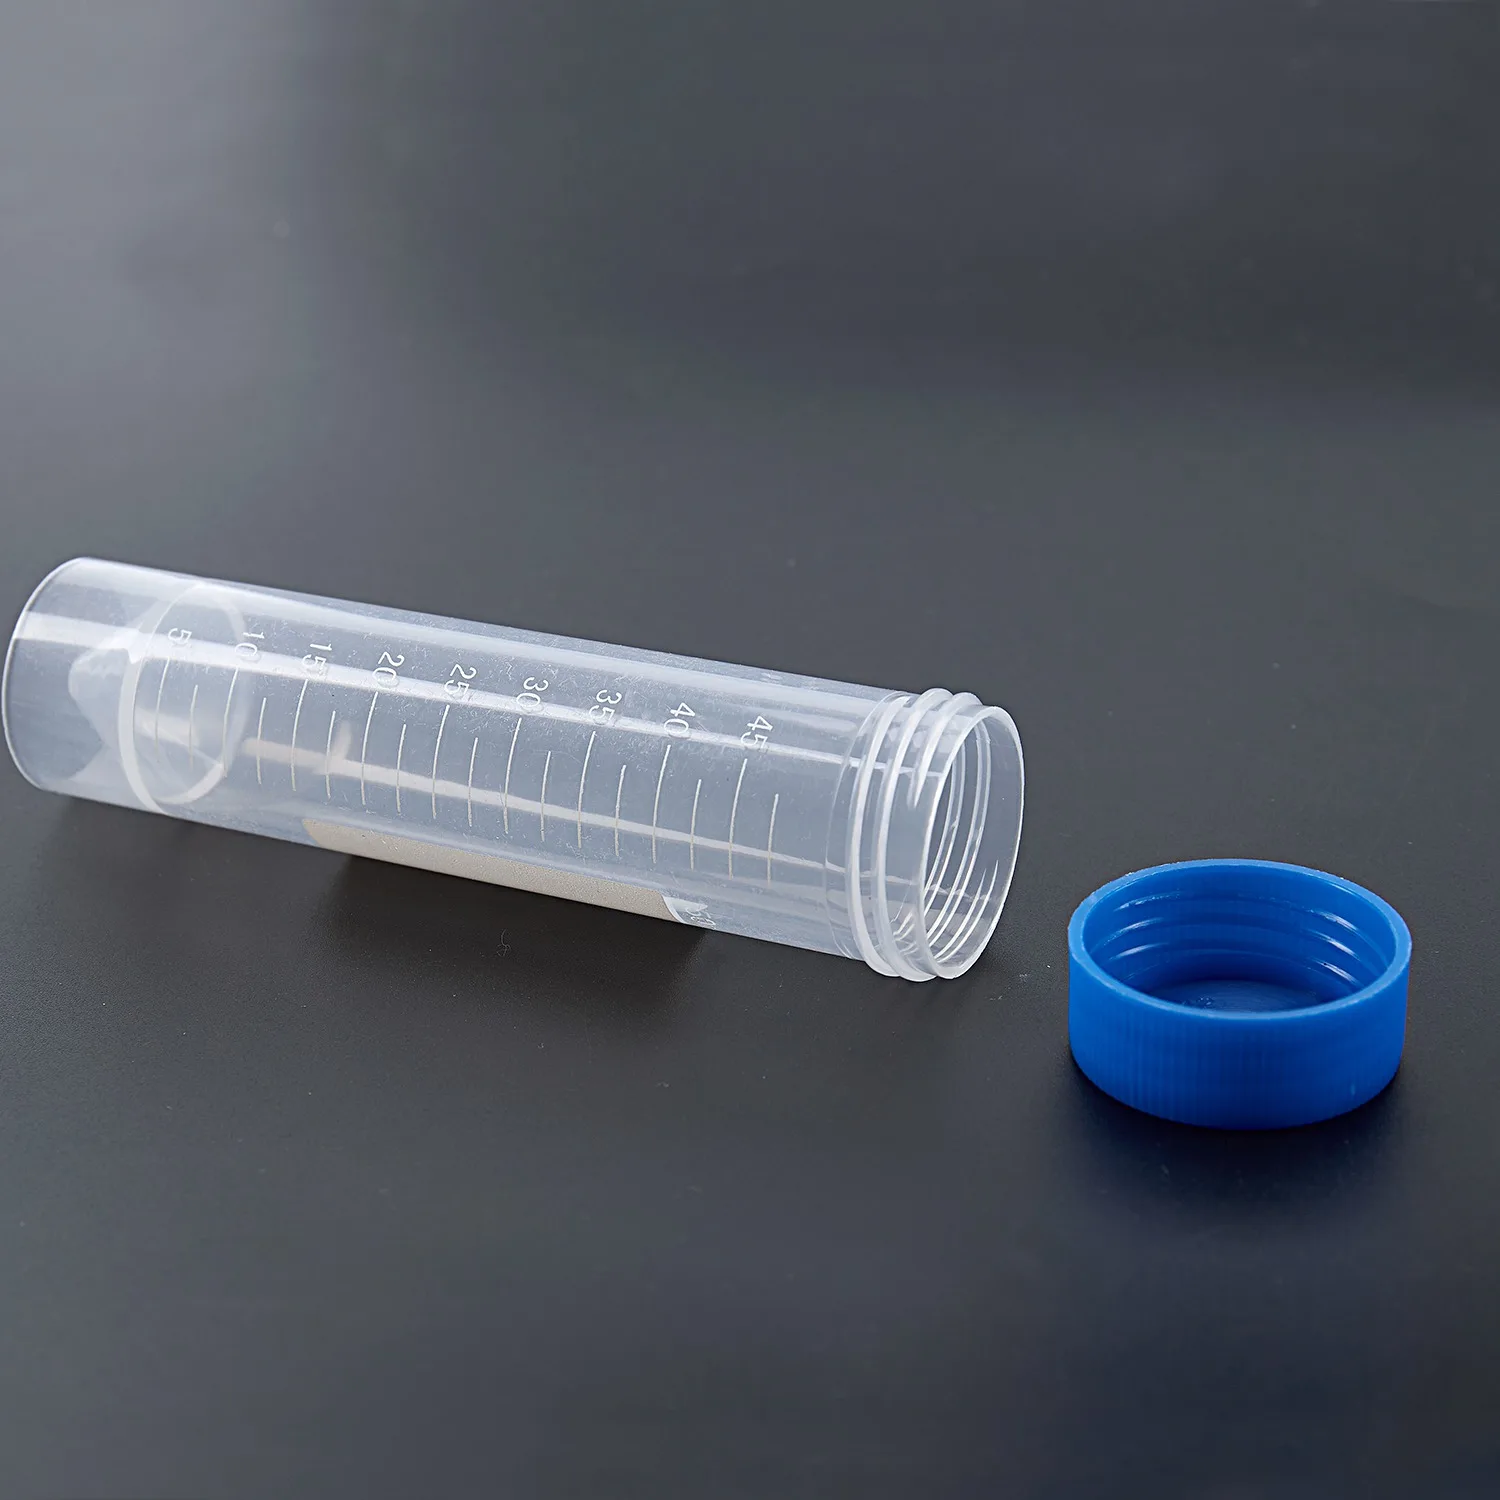 5 darab 50 ml-es műanyag átlátszó centrifugacső mérleggel Szabadon álló műanyag kémcső csavaros kupakkal - 4